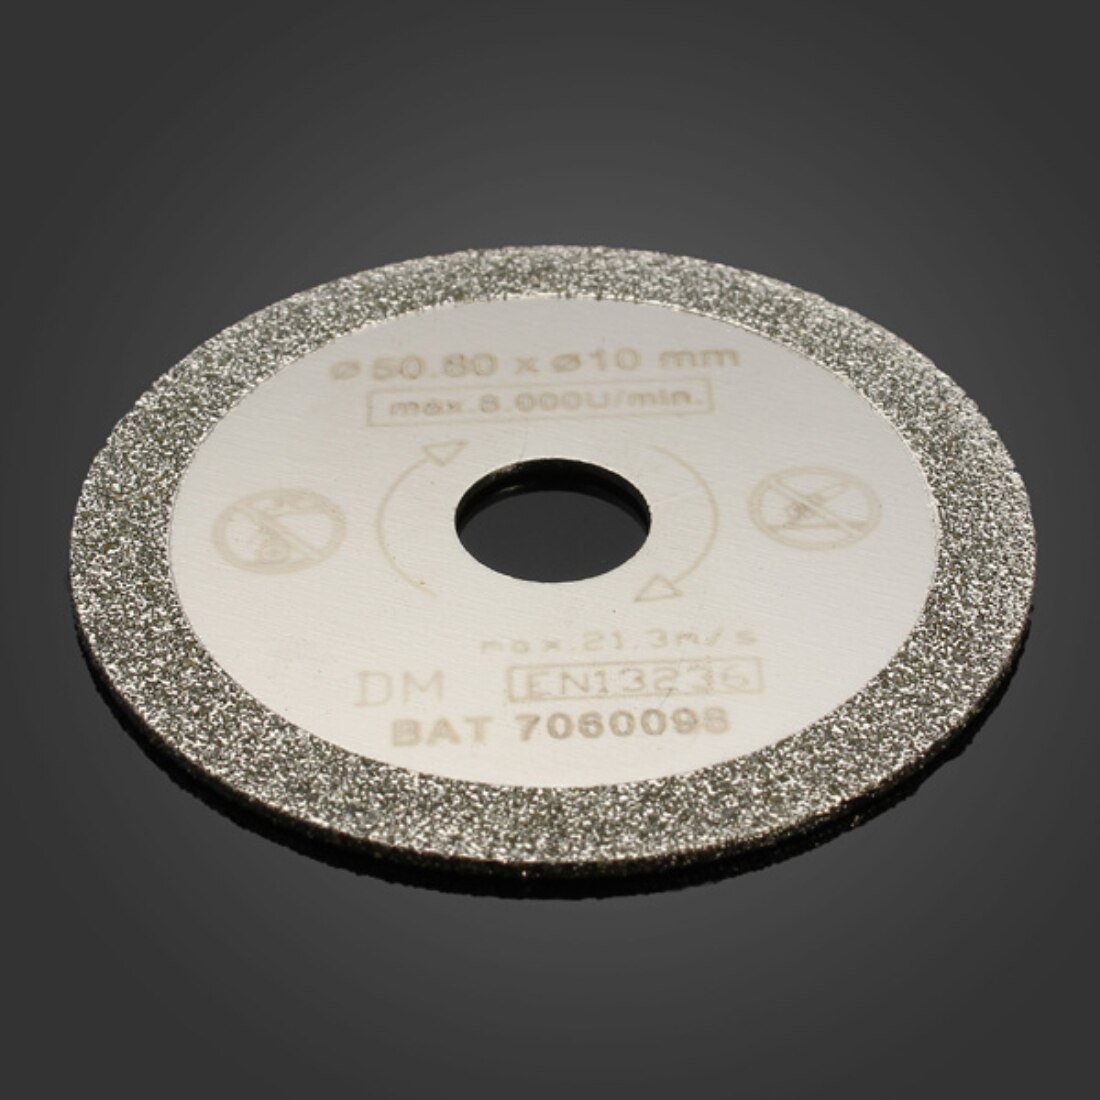 Ÿ ?? Ŀ  1PC 50.8mm ̾Ƹ  ̵ Ŀ ũ/1PC 50.8mm Diamond Saw Blade Cutting Discs For Tile Marble Cutting NEW